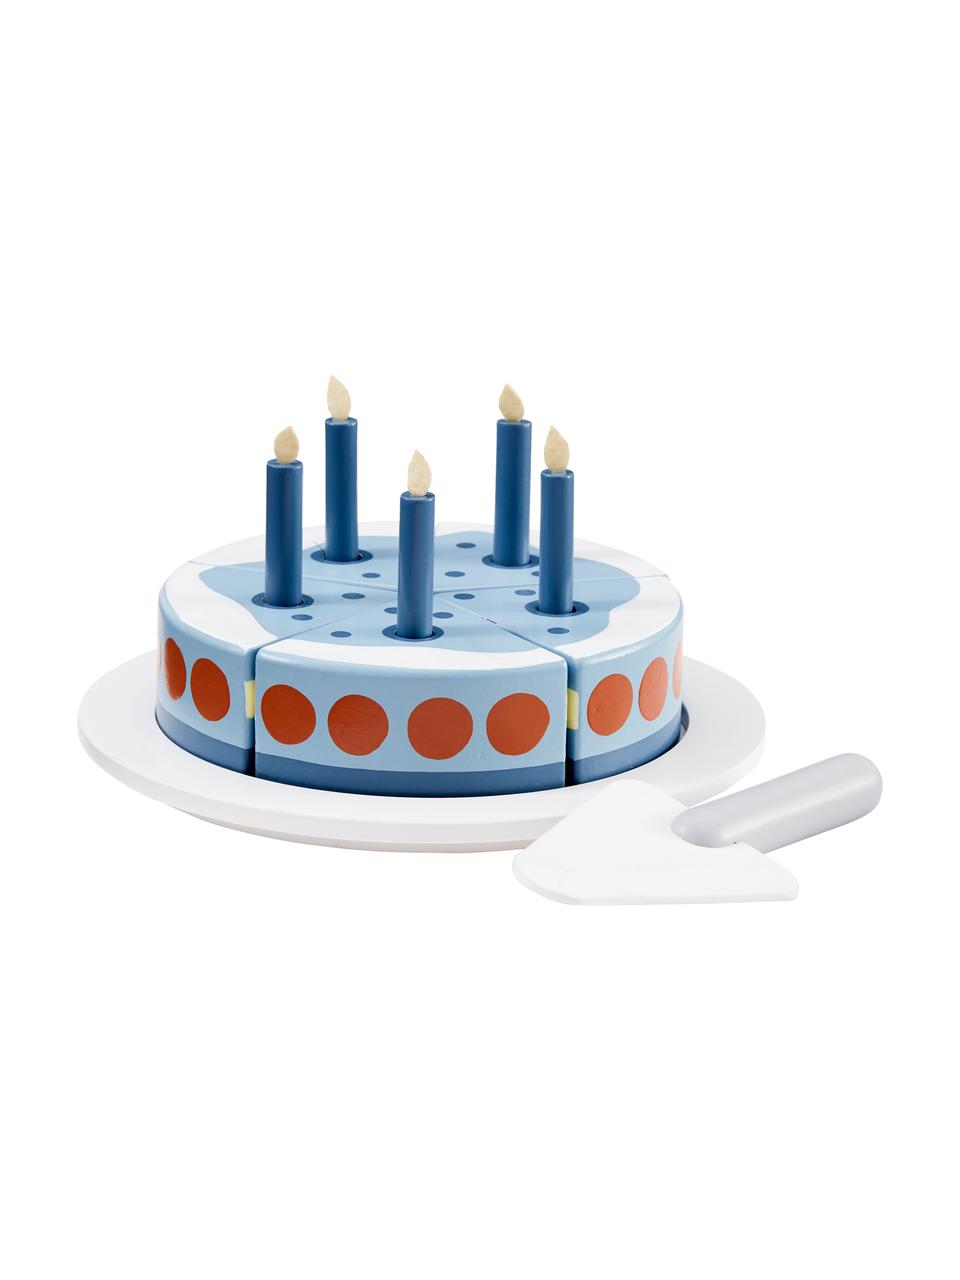 Spielzeug-Set Birthday Cake, Holz, Blau, Weiss, Rot, Ø 19 x H 10 cm